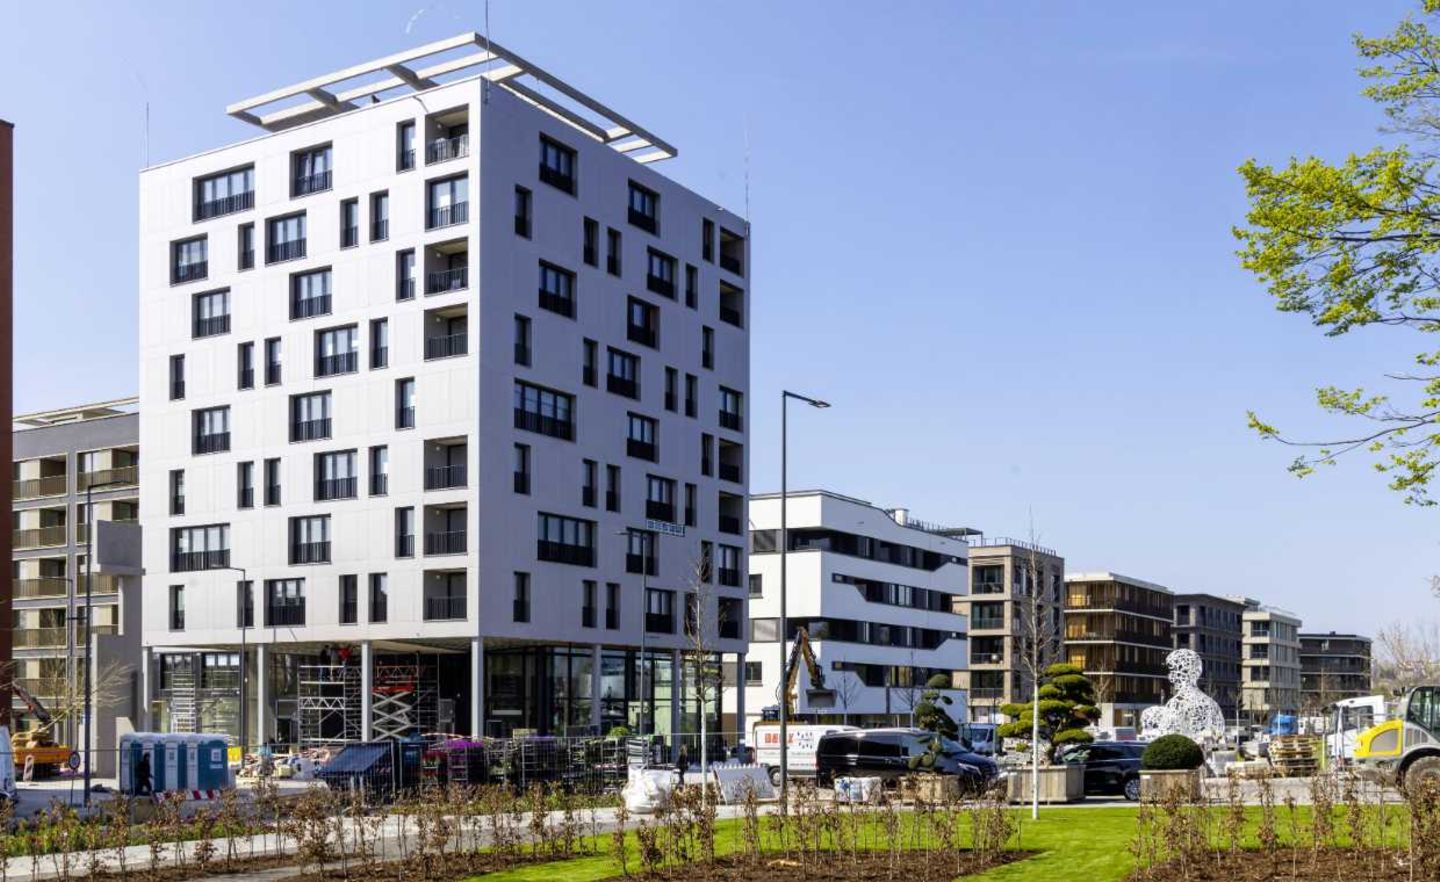 Das Skaio in Heilbronn ist mit einer Höhe von 34 Metern das derzeit höchste Holzhaus Deutschlands. 2019 wurde das nachhaltige Gebäude von der DGNB mit dem Zertifikat Diamant ausgezeichnet